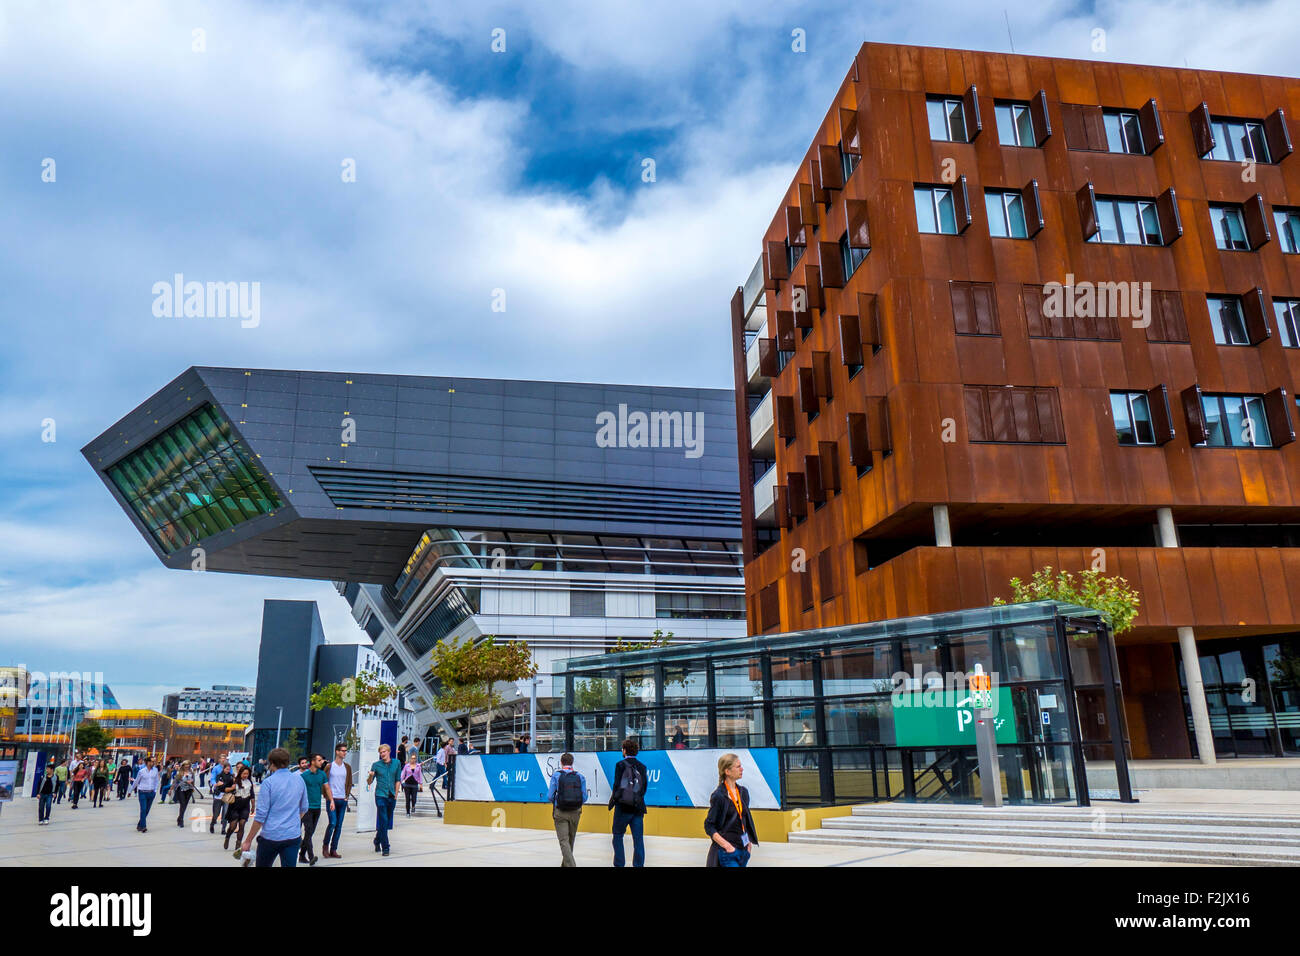 La Universidad de Ciencias Económicas, Campus, la arquitecta Zaha Hadid, Viena, Austria, Europa Foto de stock